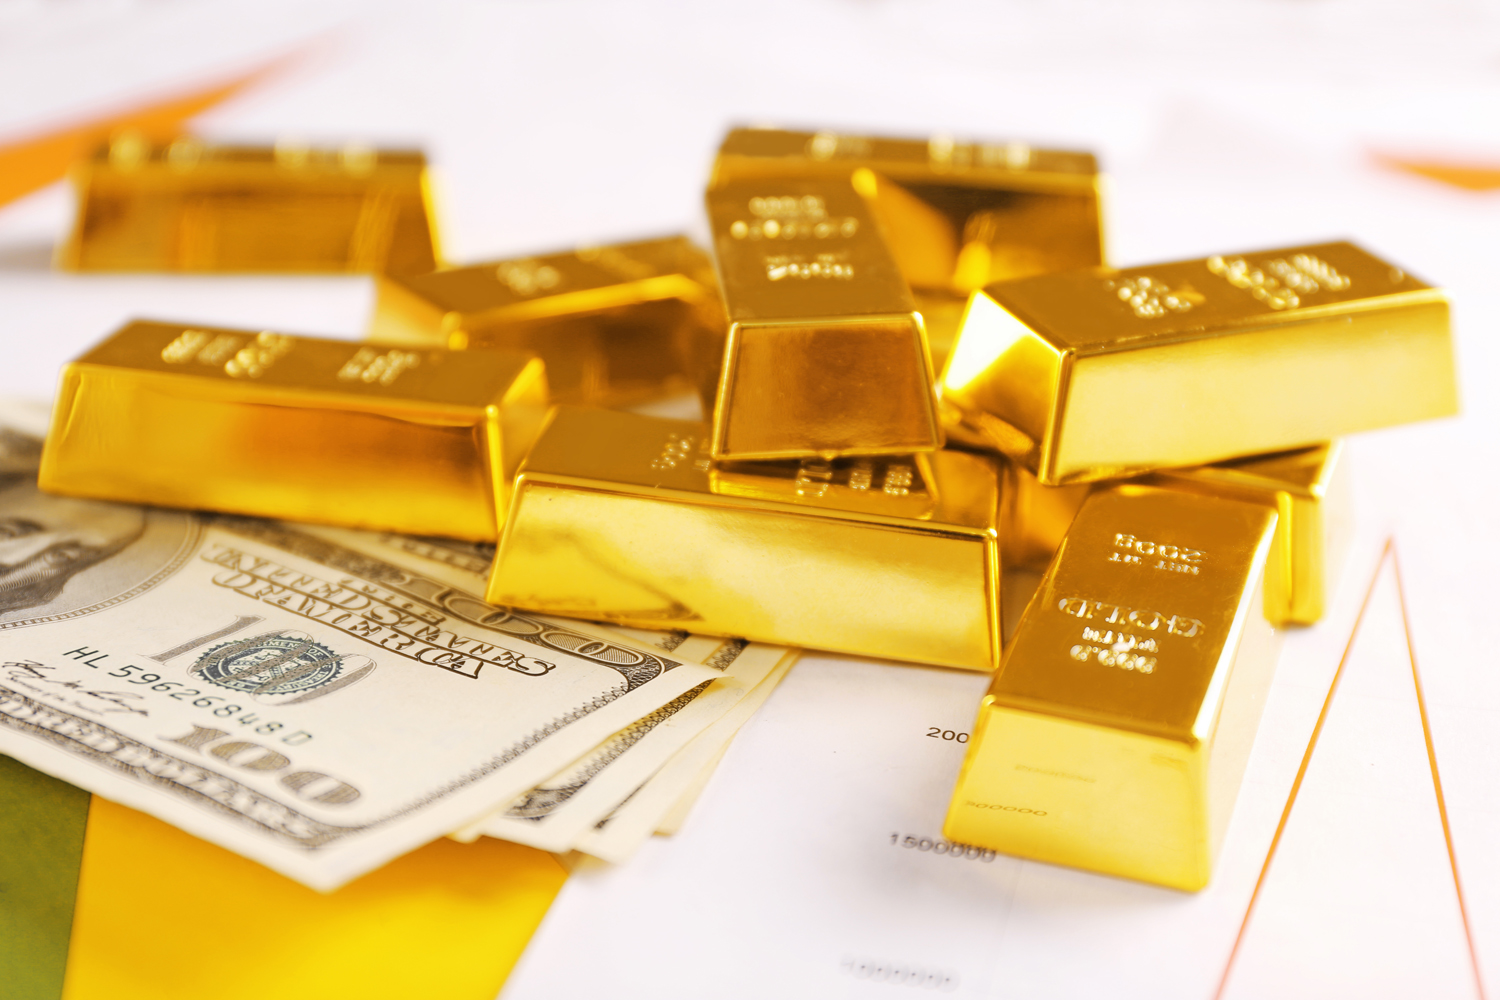 تراجع أسعار الذهب 9ر1 بالمئة لتغلق عند 2004 دولارات للأونصة الأسبوع الماضي                                                                                                                                                                                